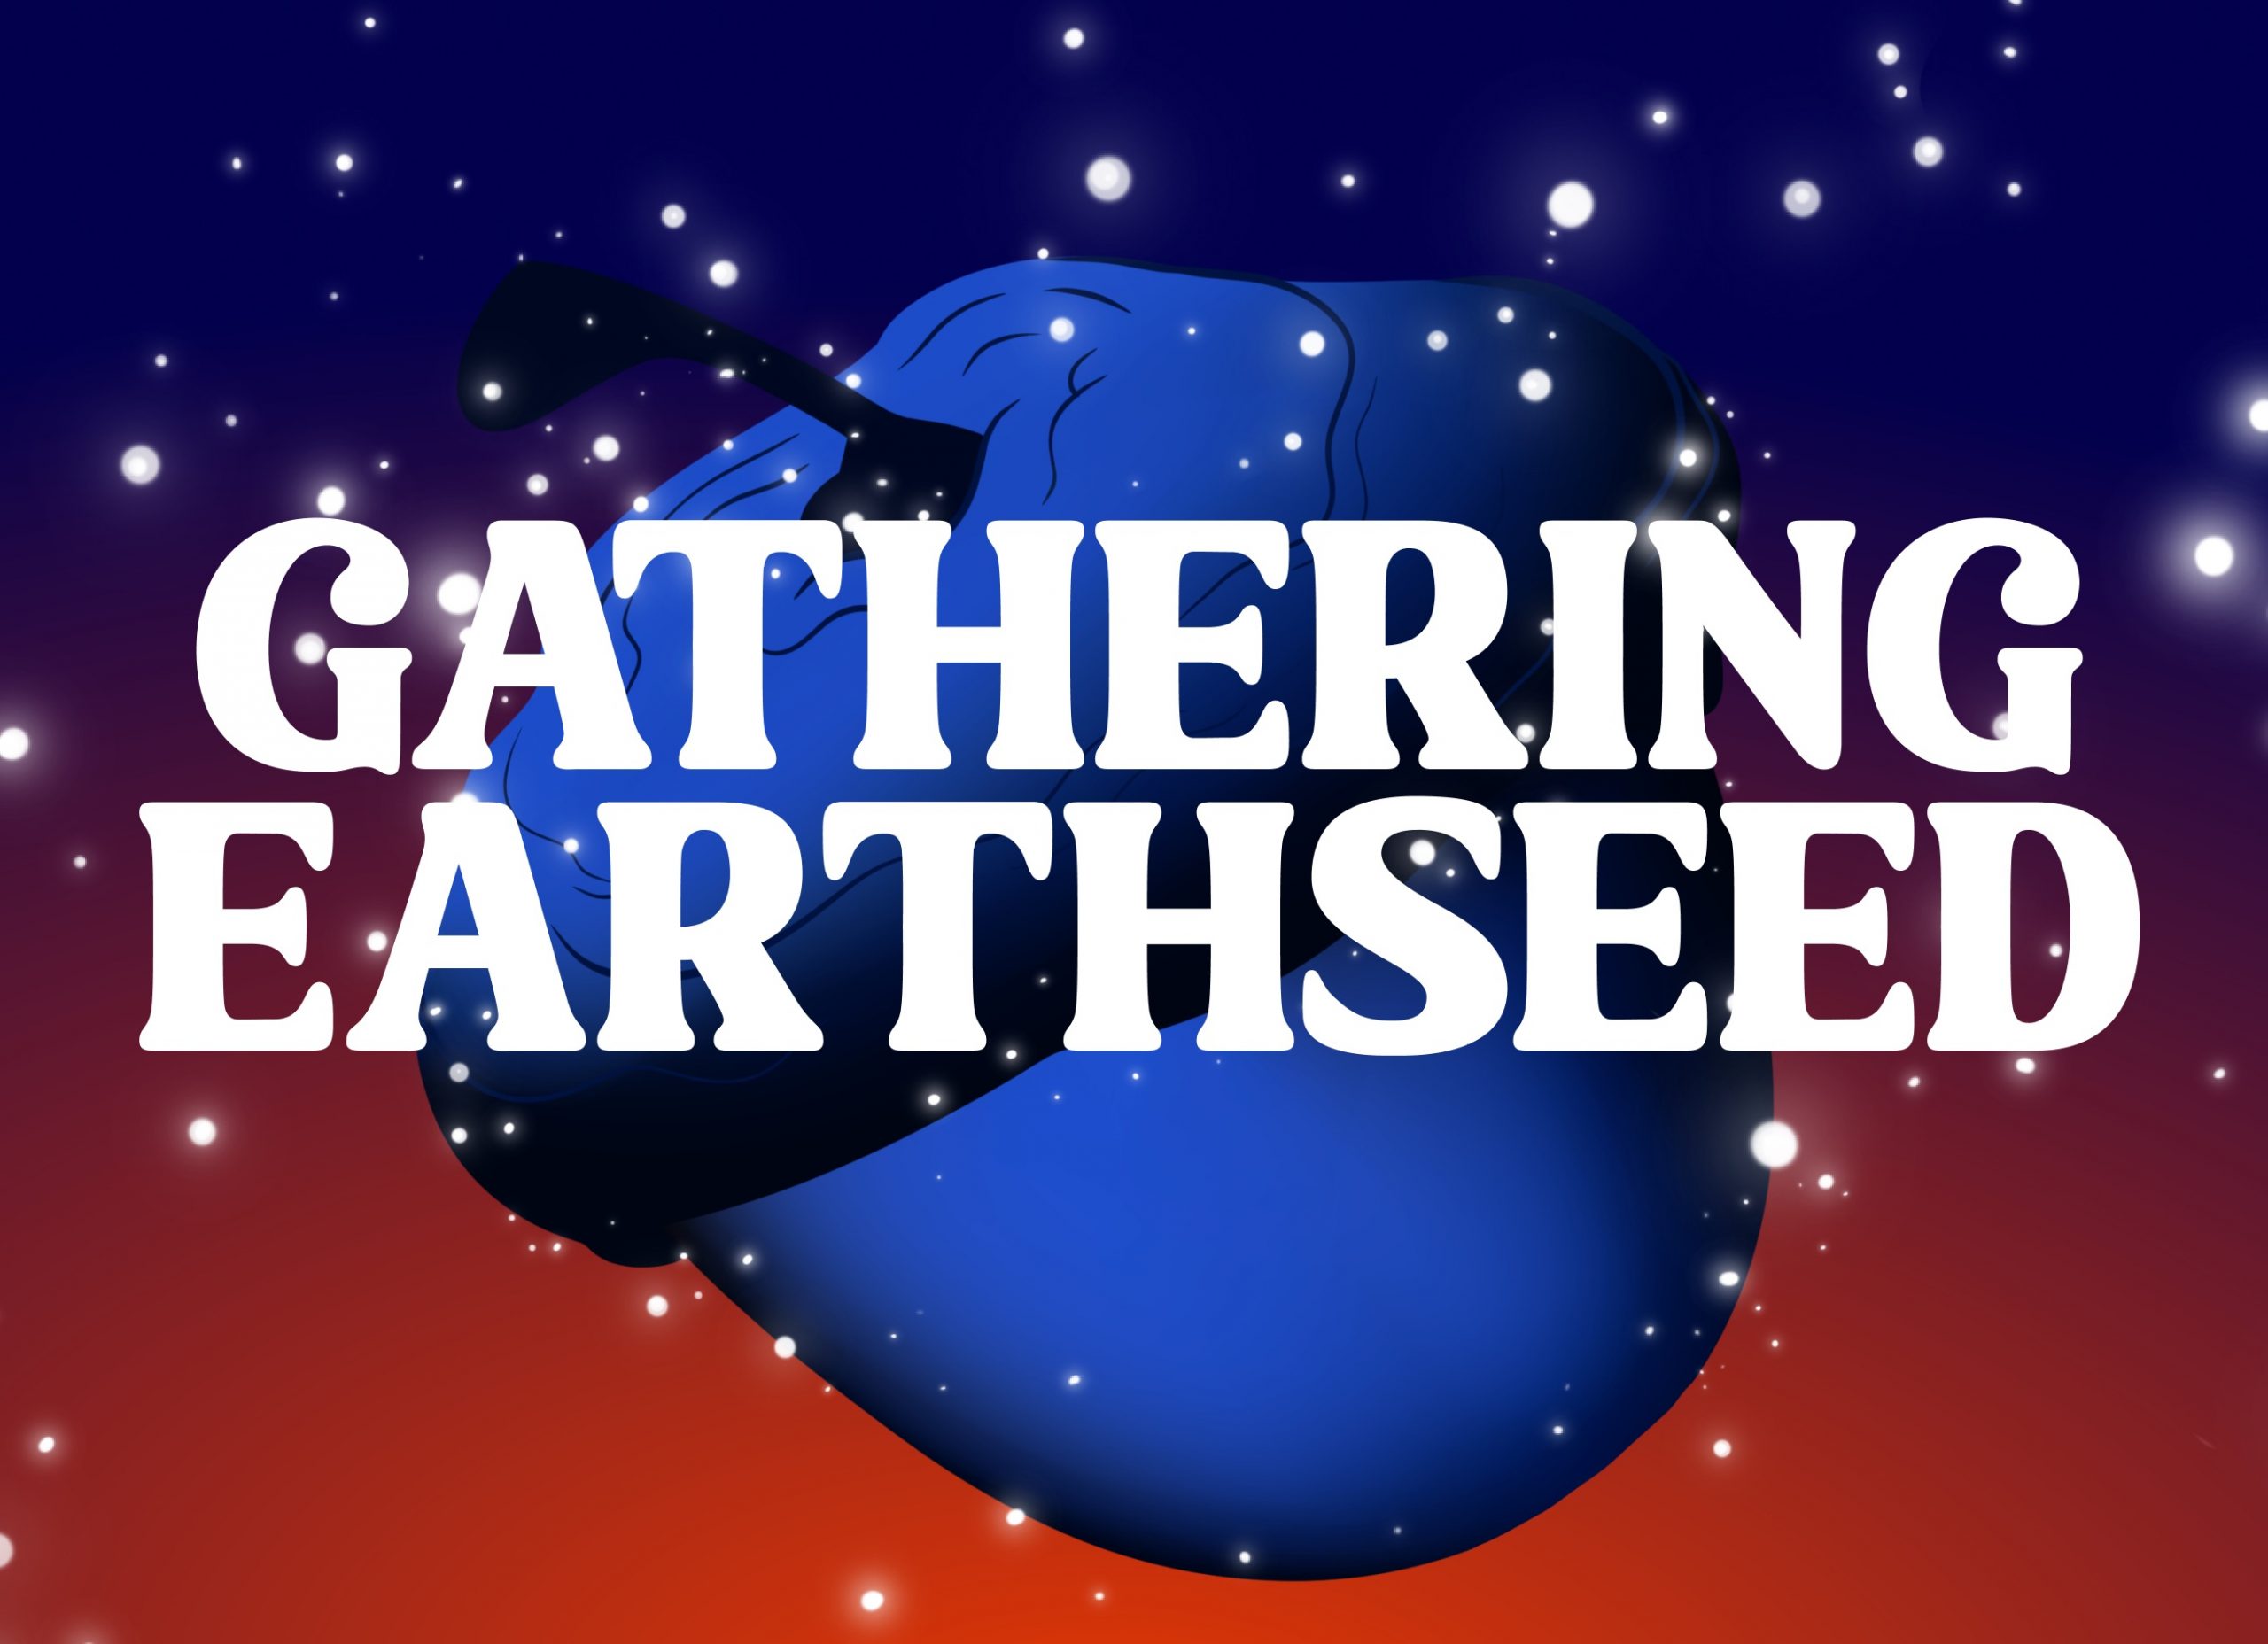 Gathering Earthseed